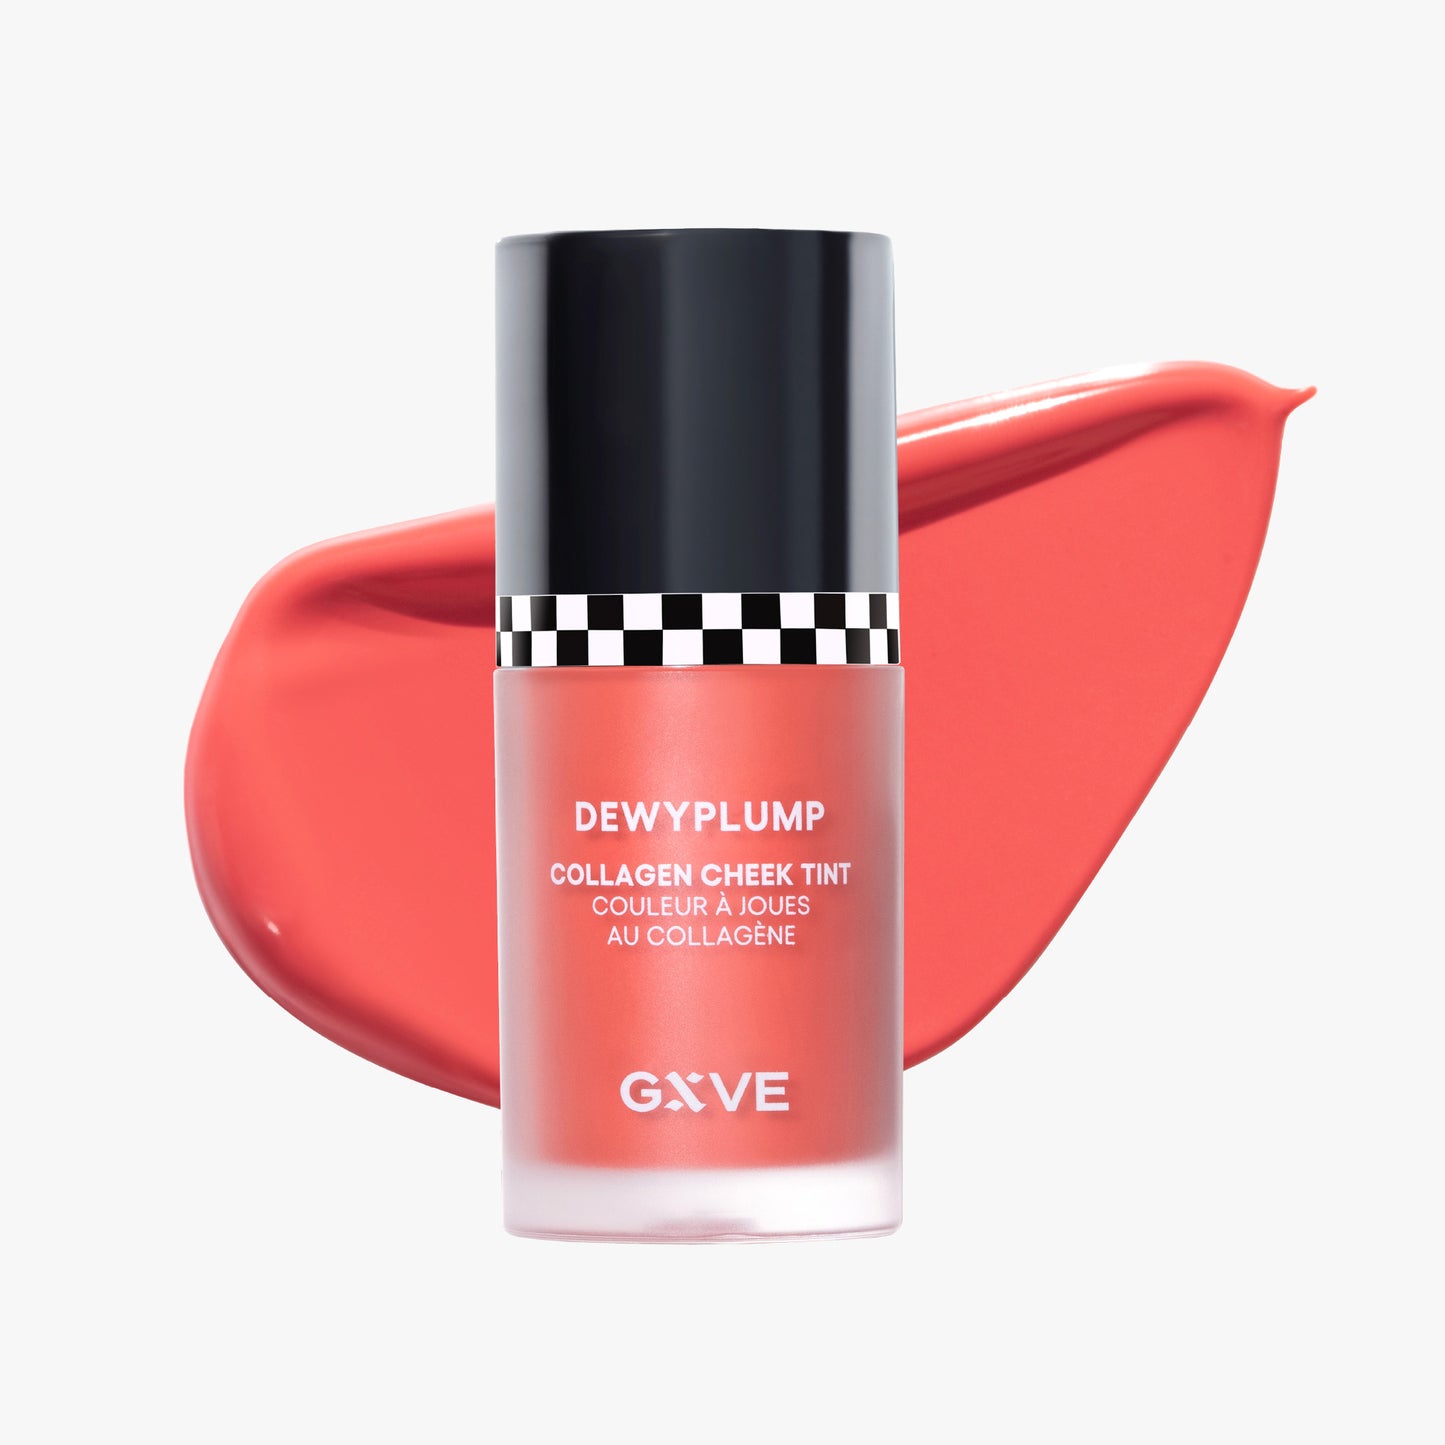 GXVE Marigolds - Clean, High-Performance Liquid Blush